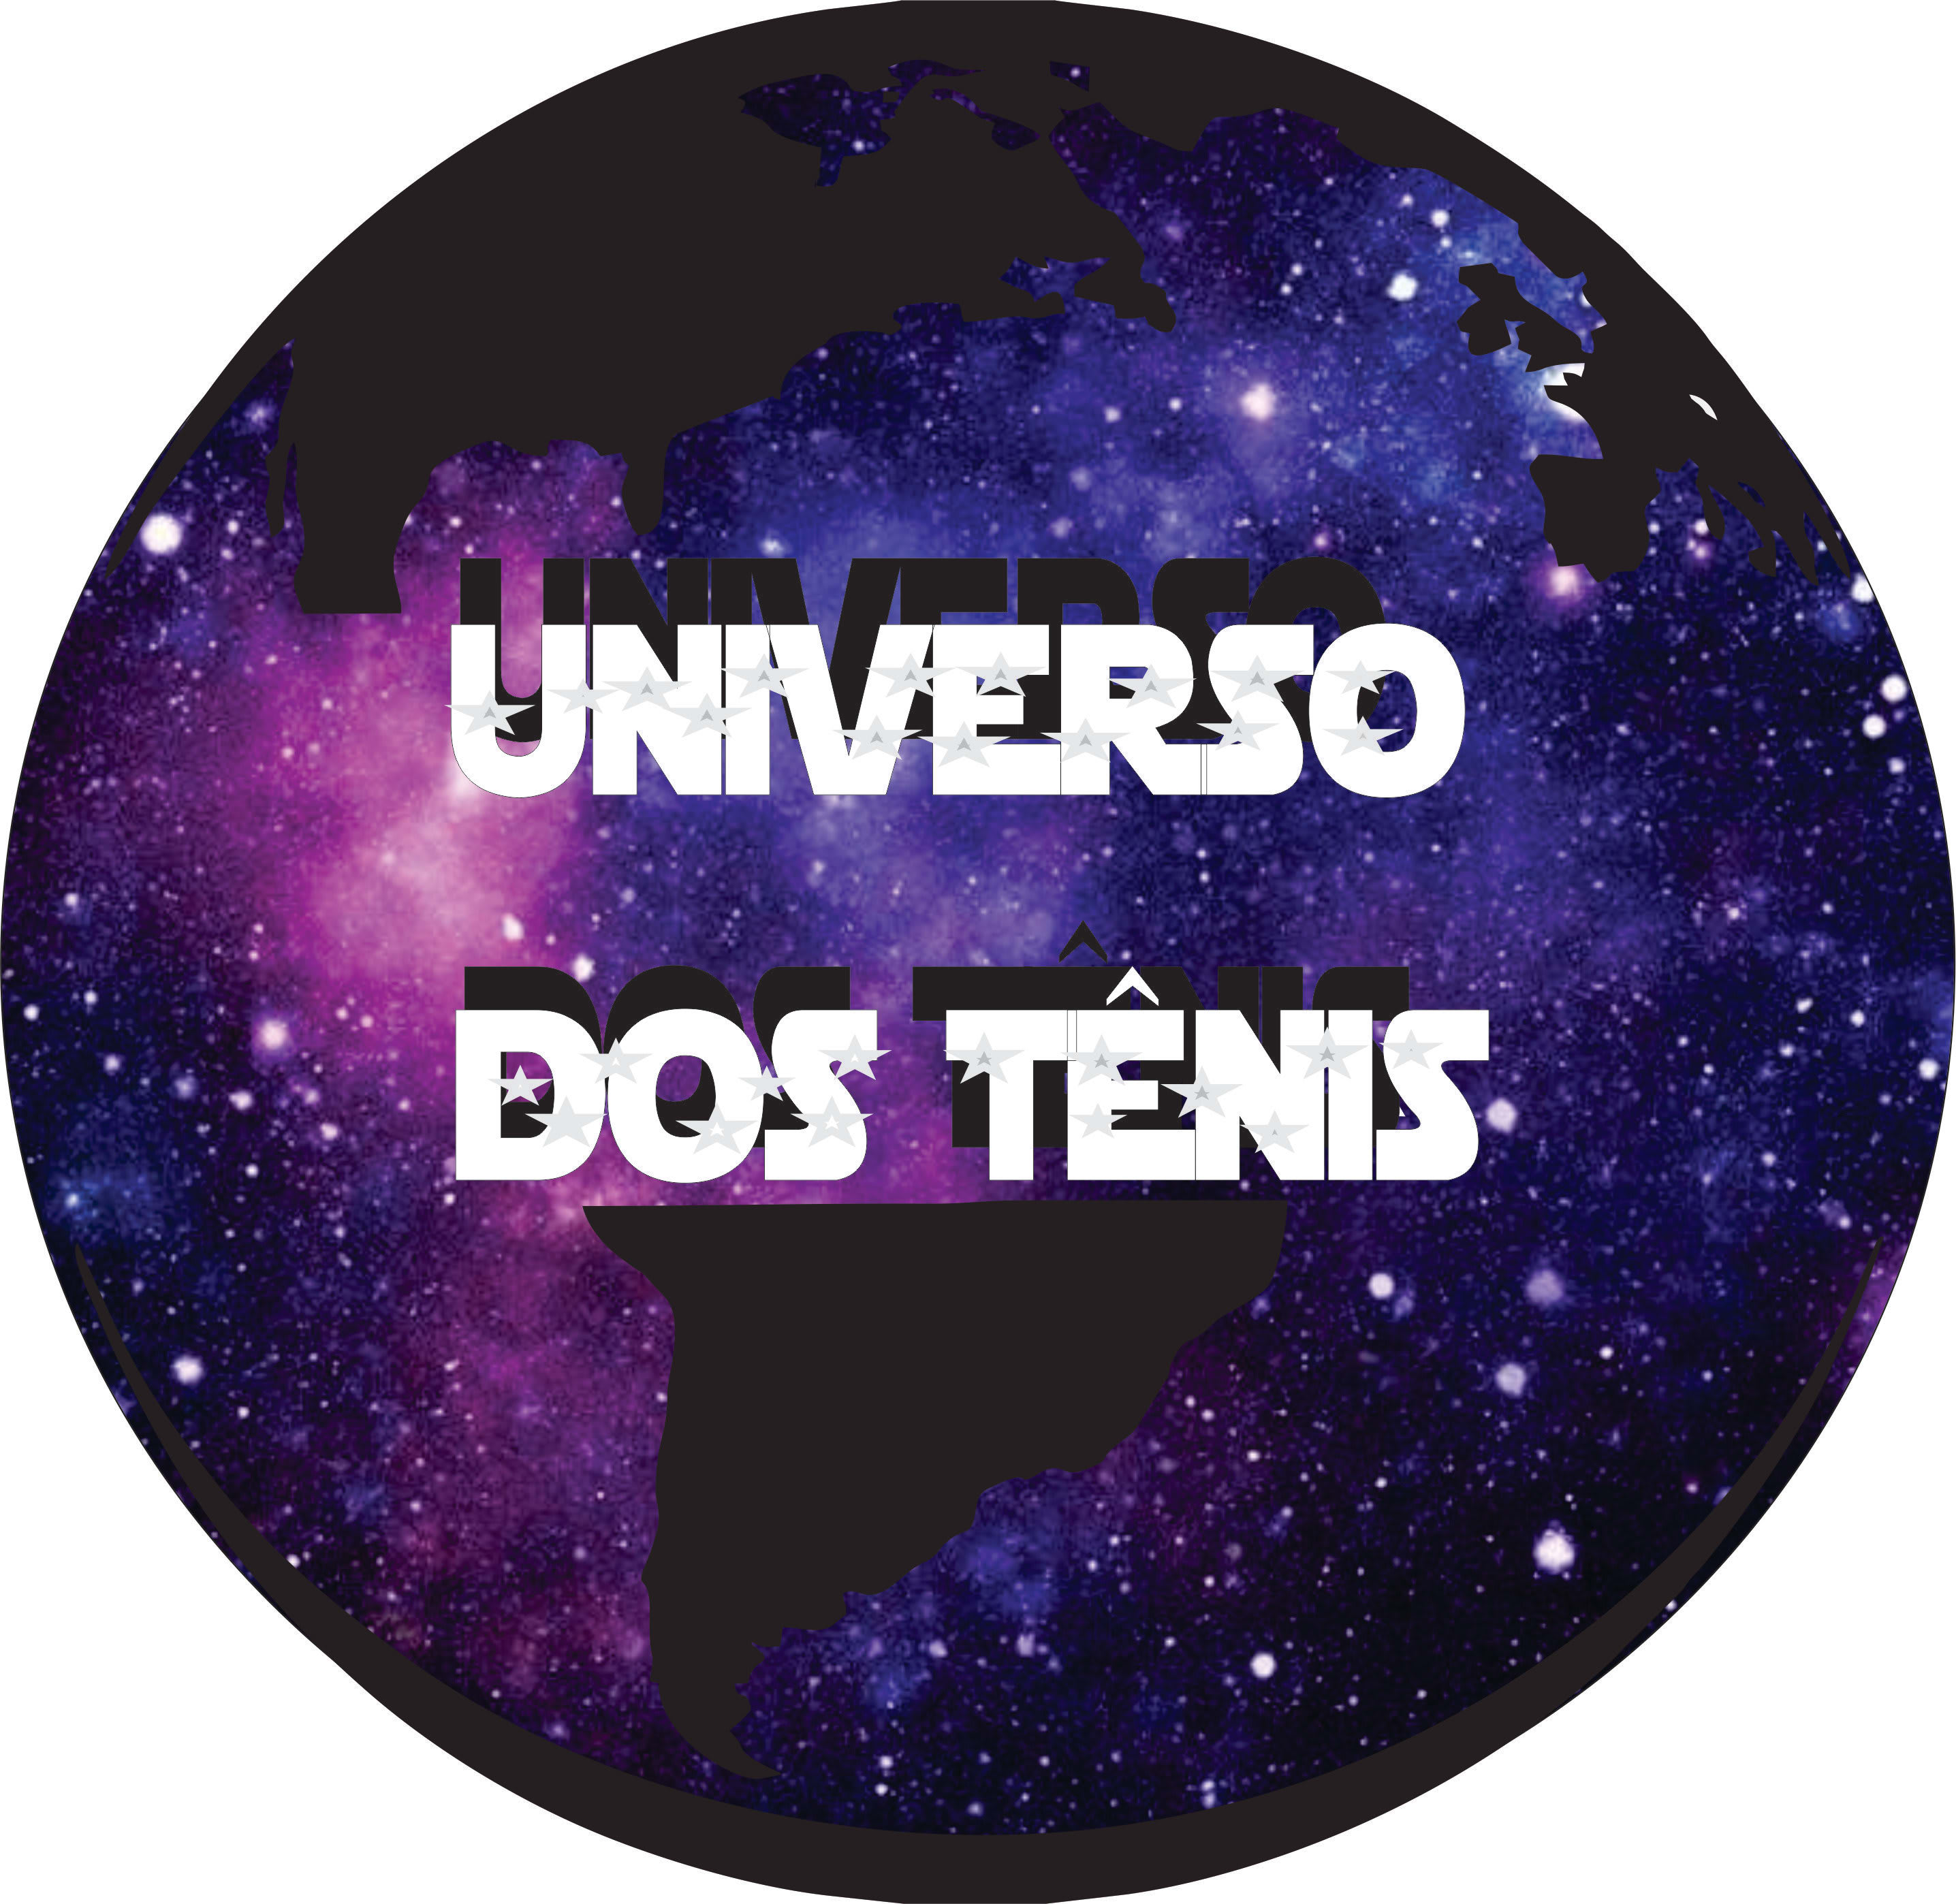 Universo dos Tênis